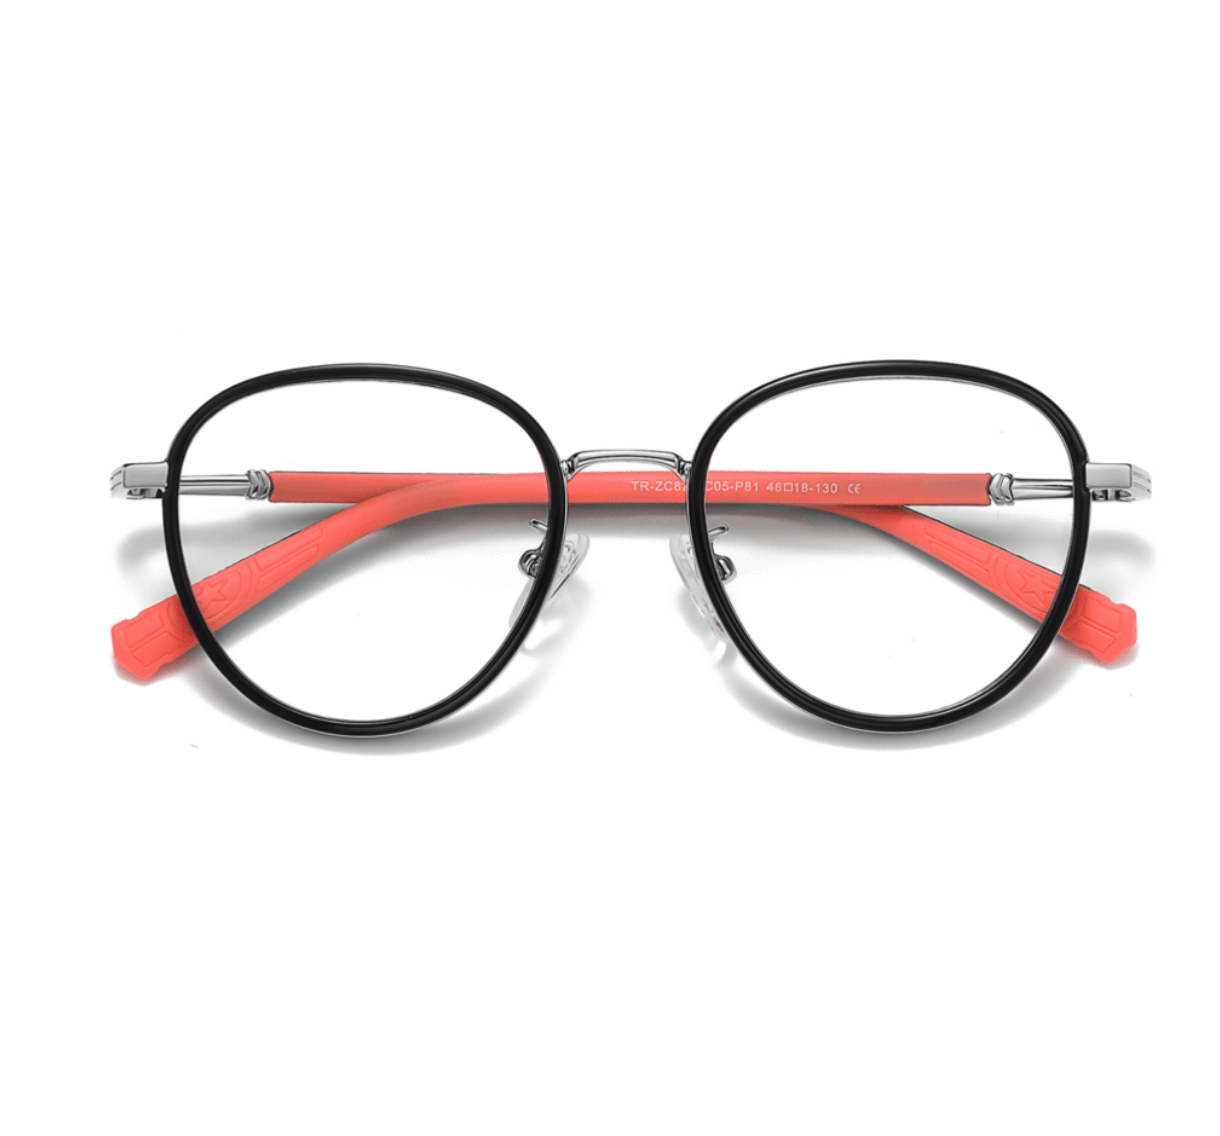 METAL glasses frames for girls, glasses frames manufacturer